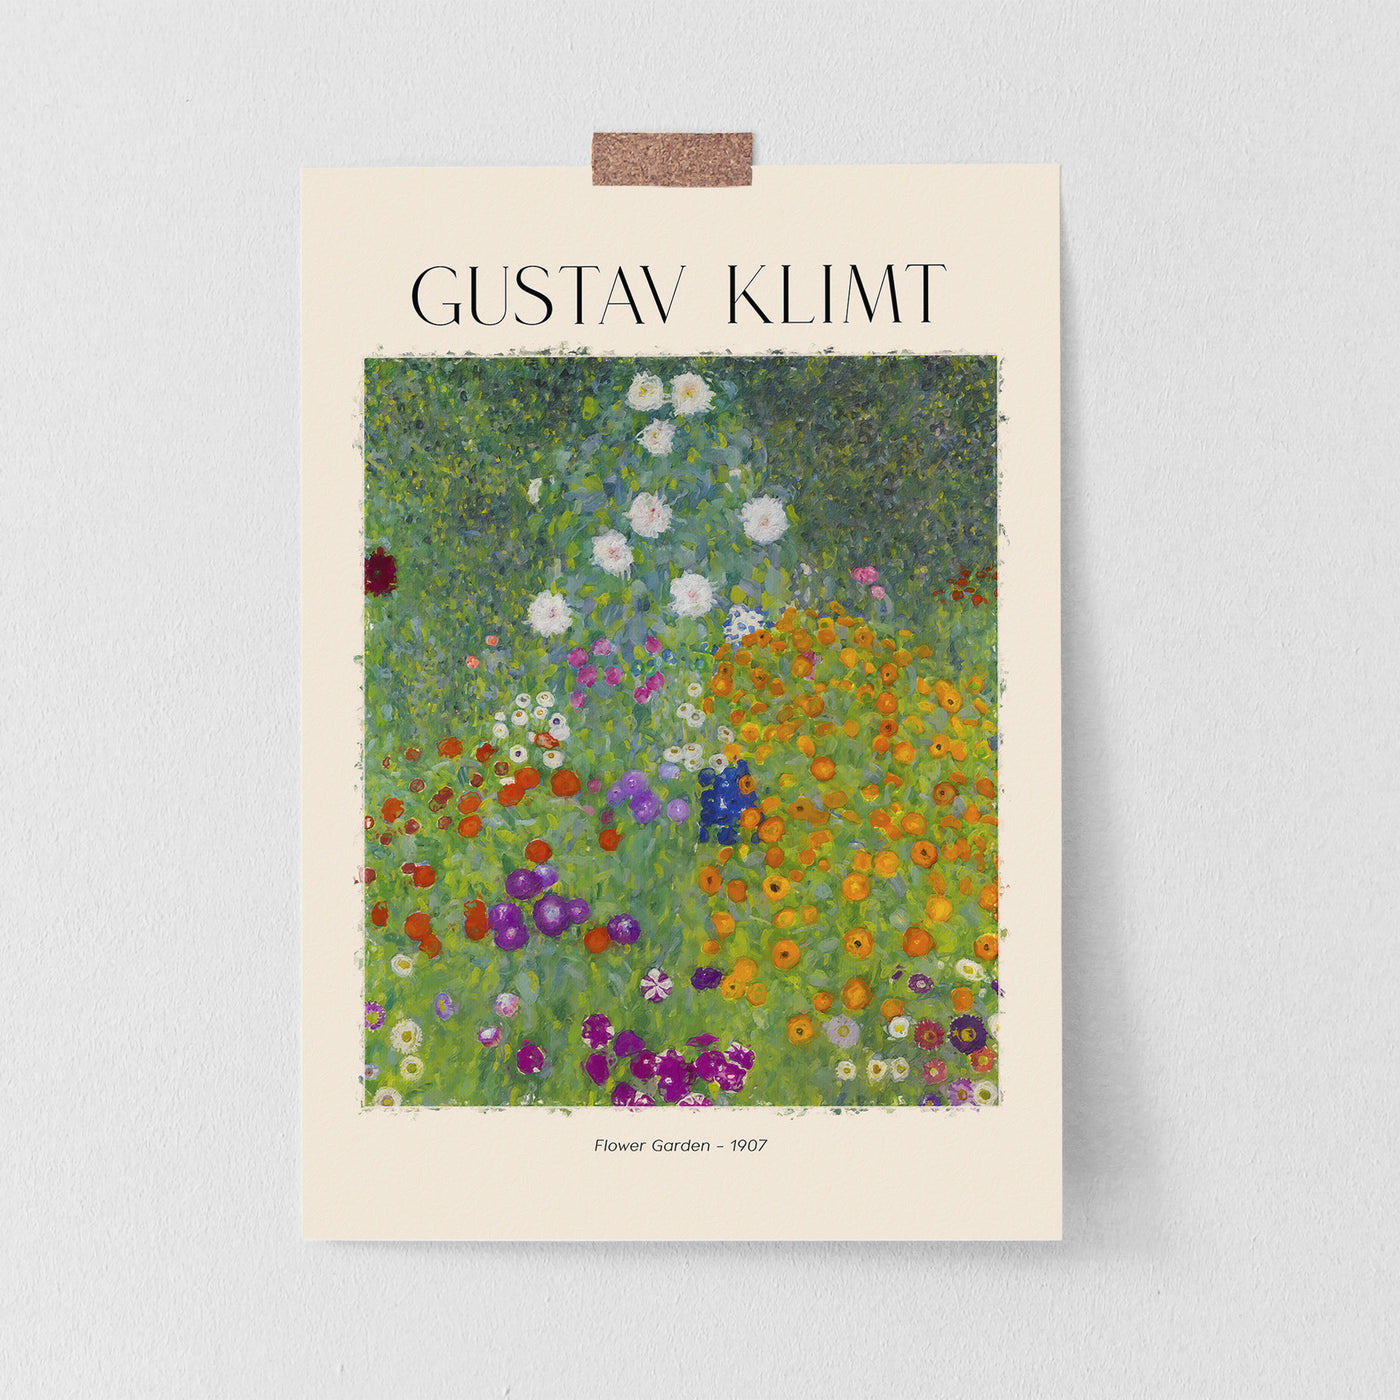 Gustav Klimt Portrait Of Flower Gardner - 1907